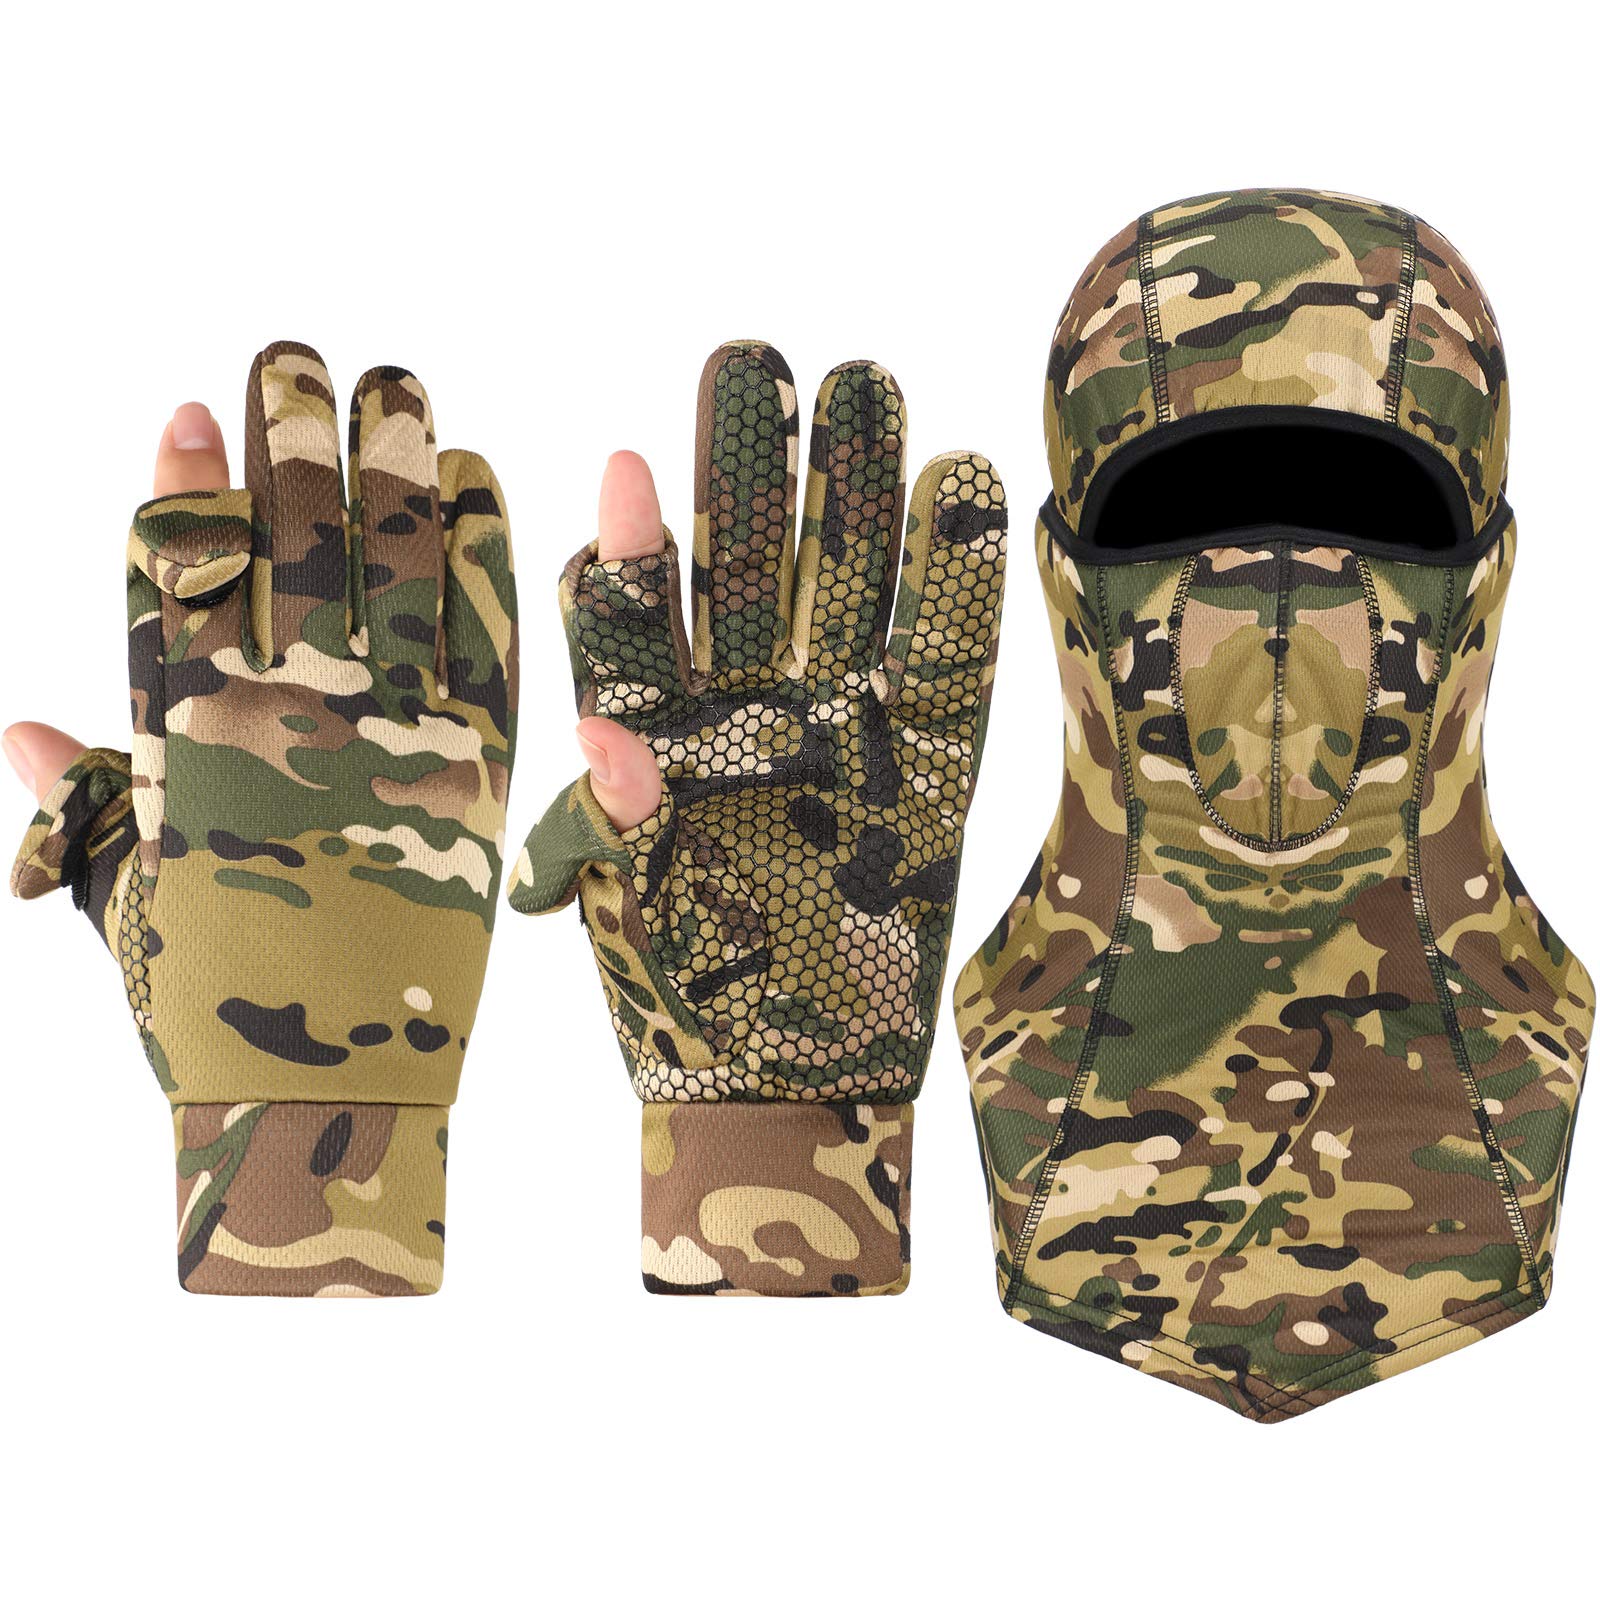 Camo Hunting Gloves for Men Full Face Cover Hunting Mitten Balaclava Anti Slip Full Finger Fingerless Mitten Wind Resistant